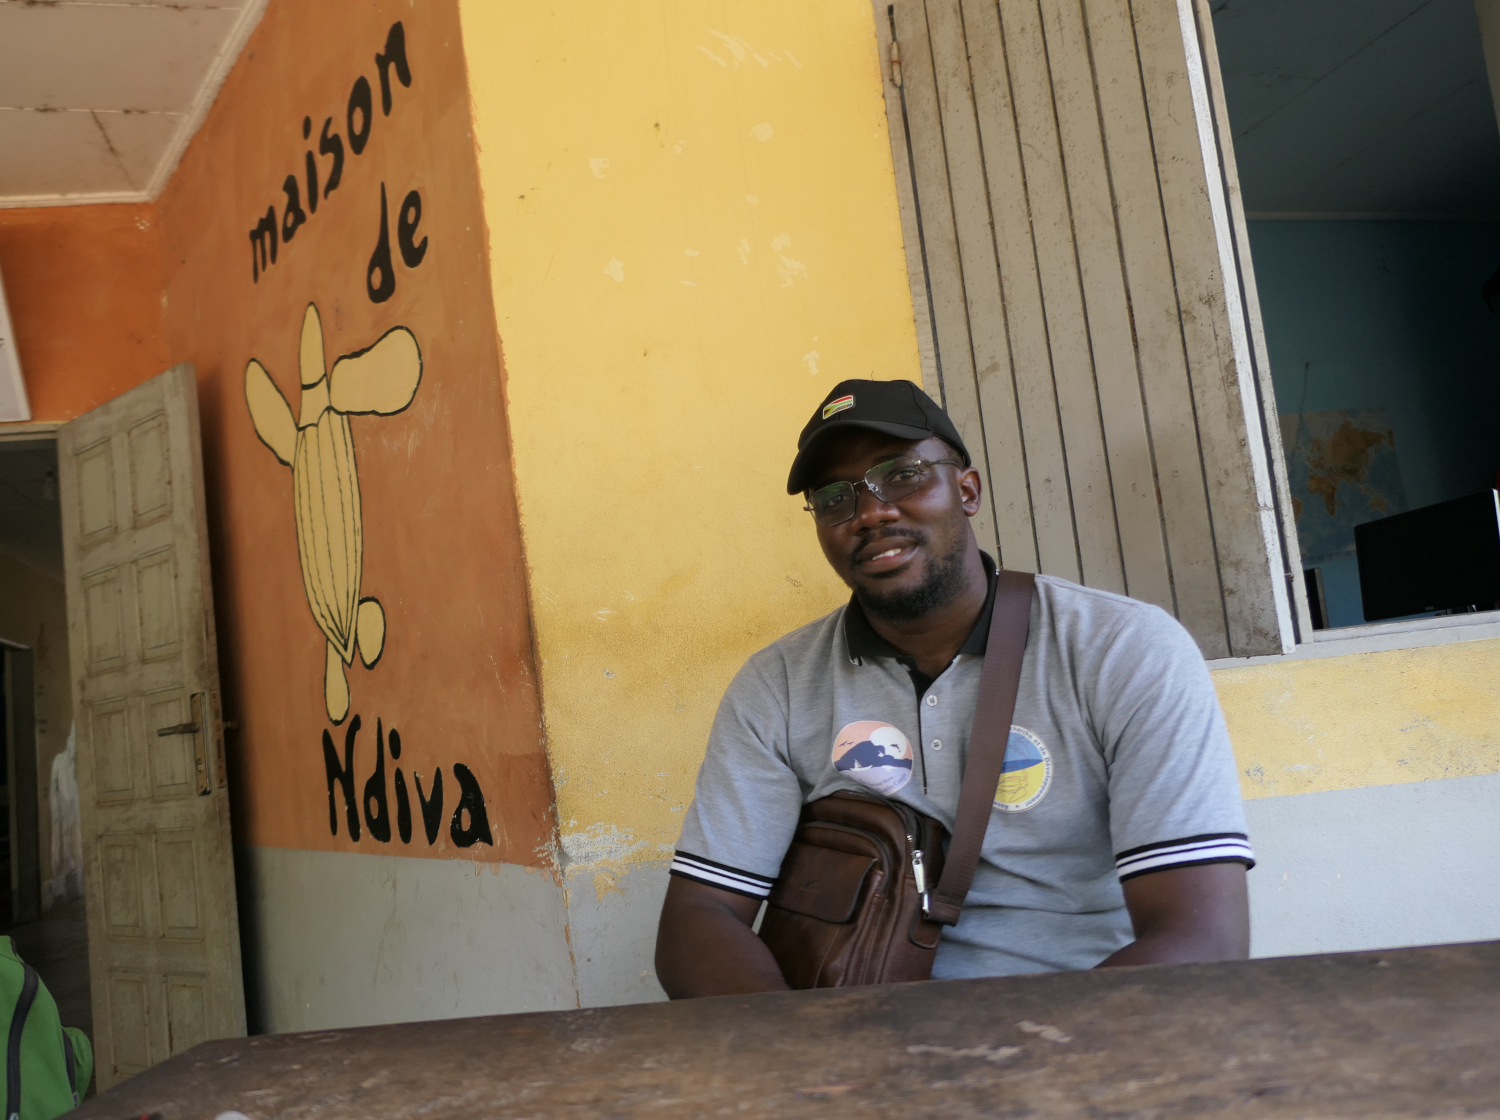 Xavier NDJAMO, coordinateur de l’association Tube Awu, devant la maison Ndiva qui accueille leurs locaux. Ndiva signifie “tortue luth” en langue Yassa